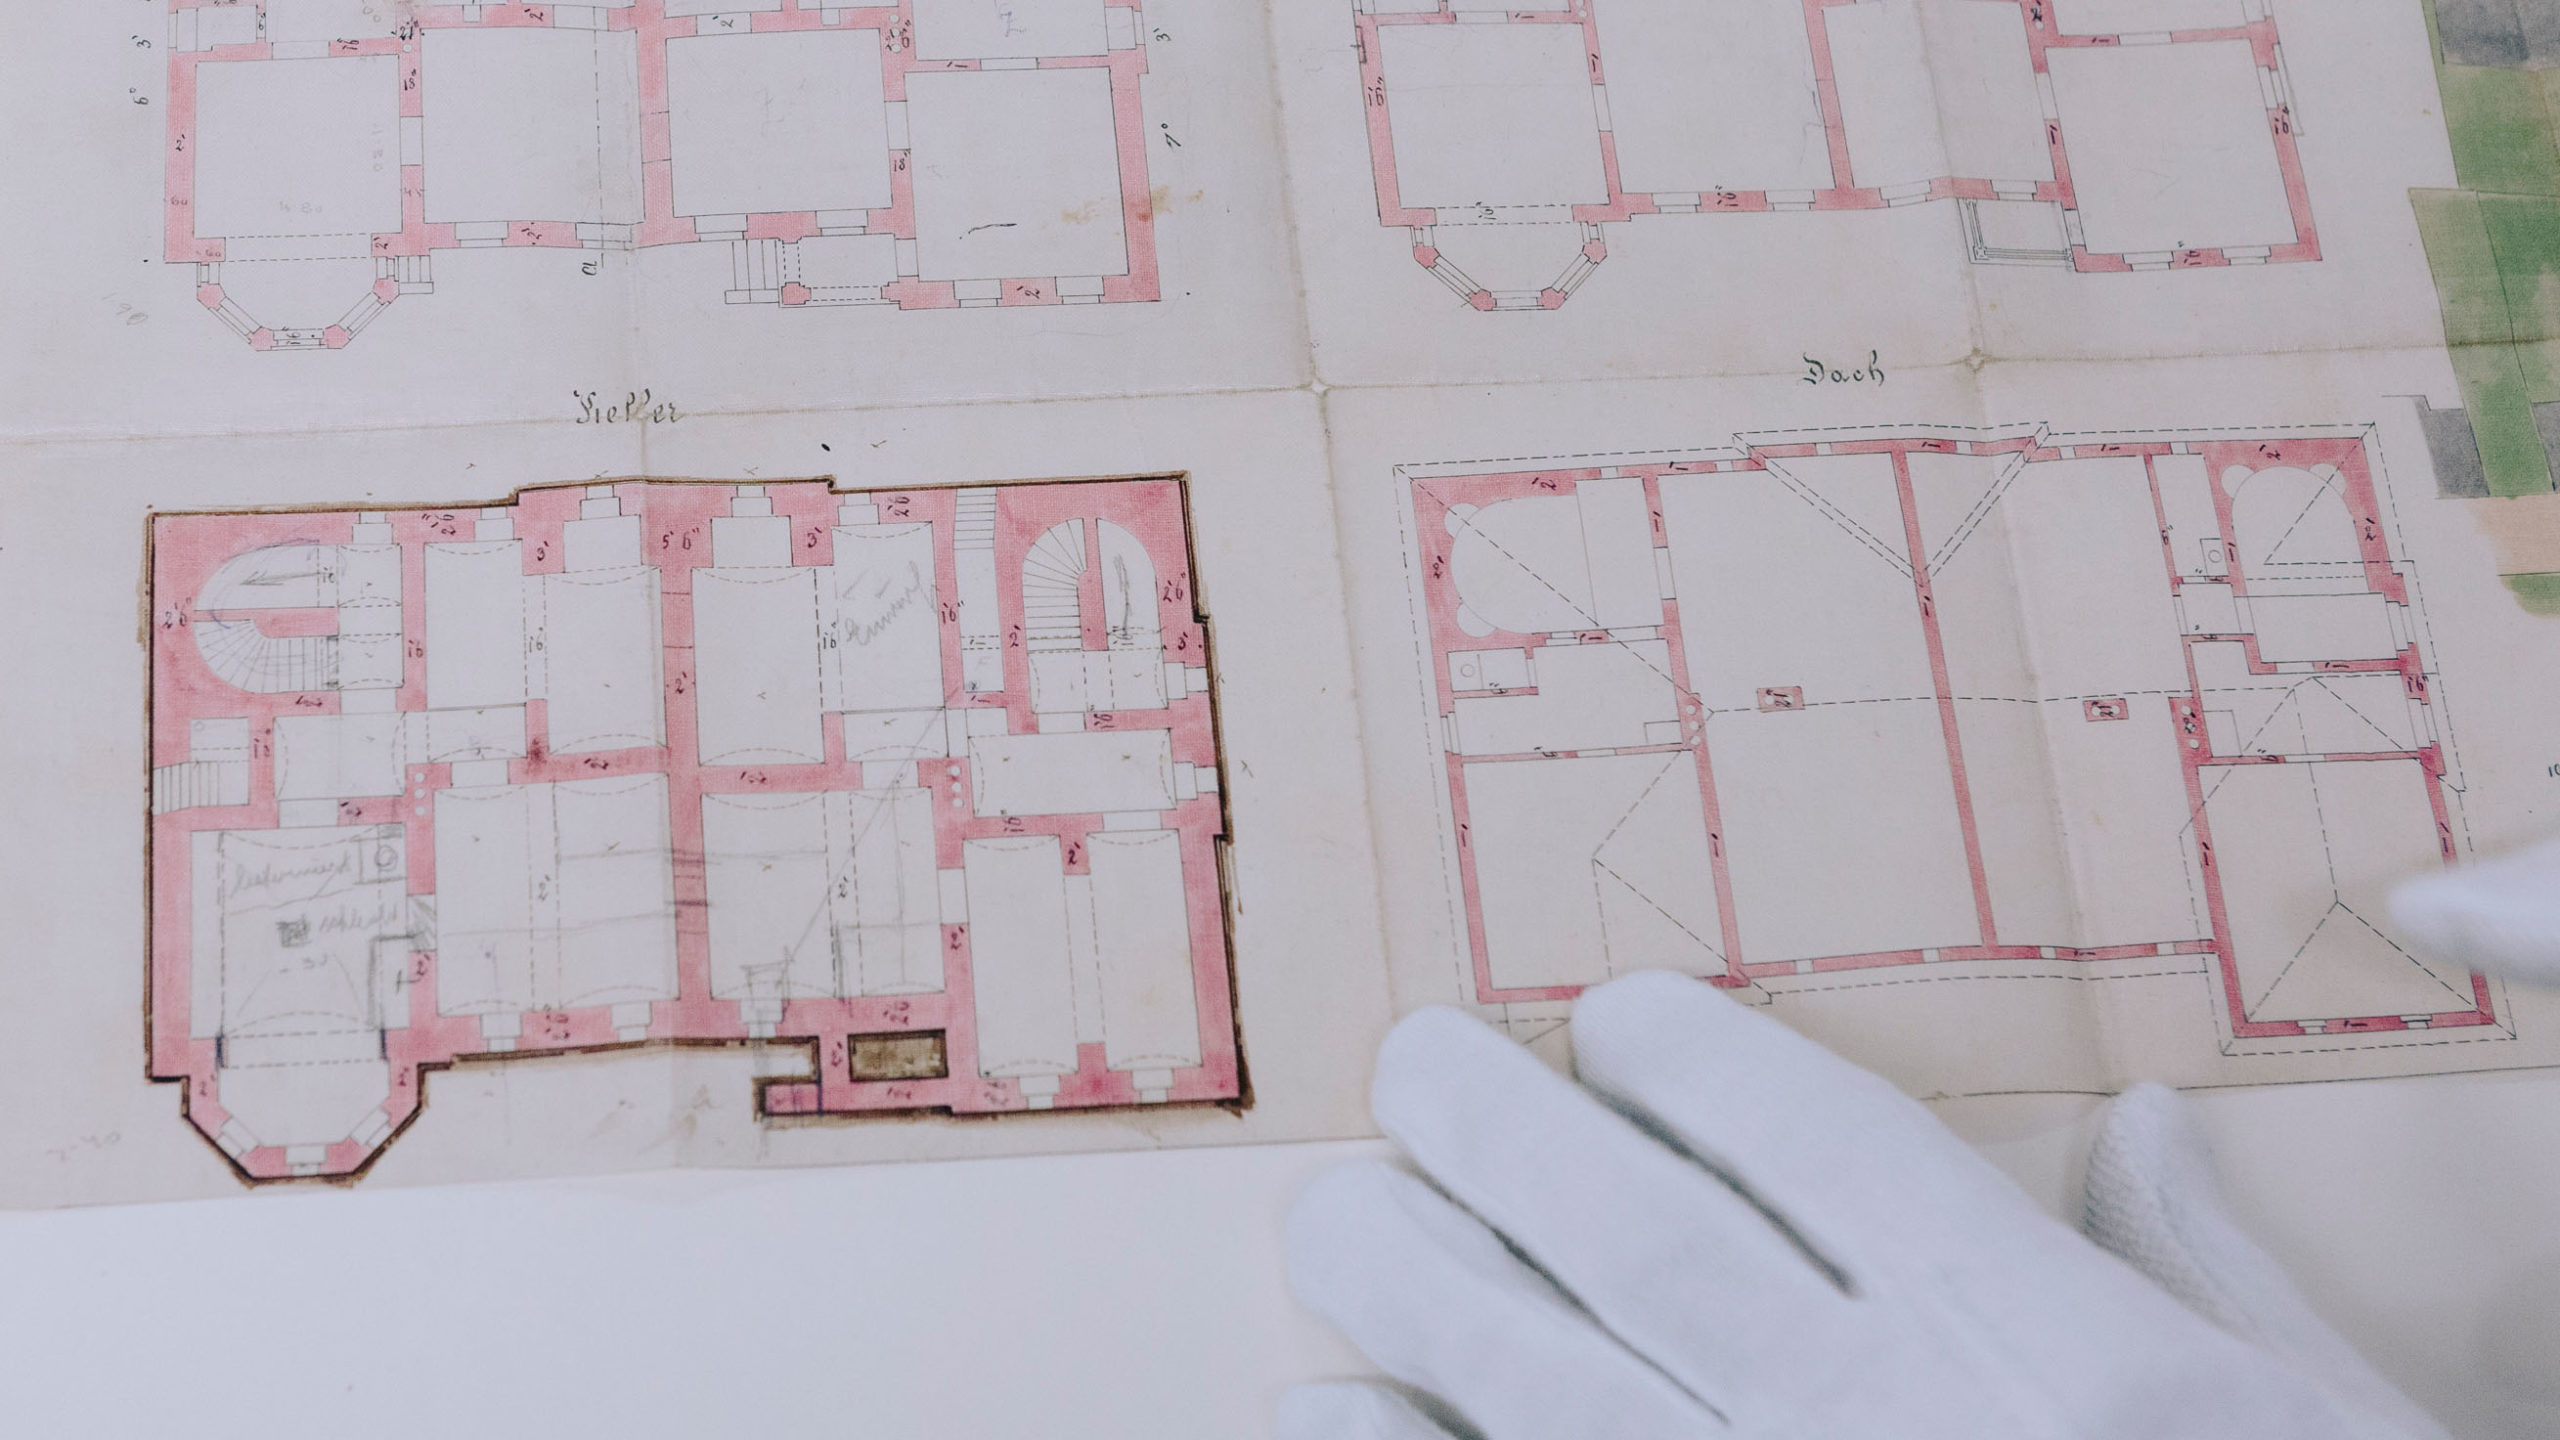 Ein alter Plan zeigt die hand-gezeichneten Grundrisse eines Gebäudes.